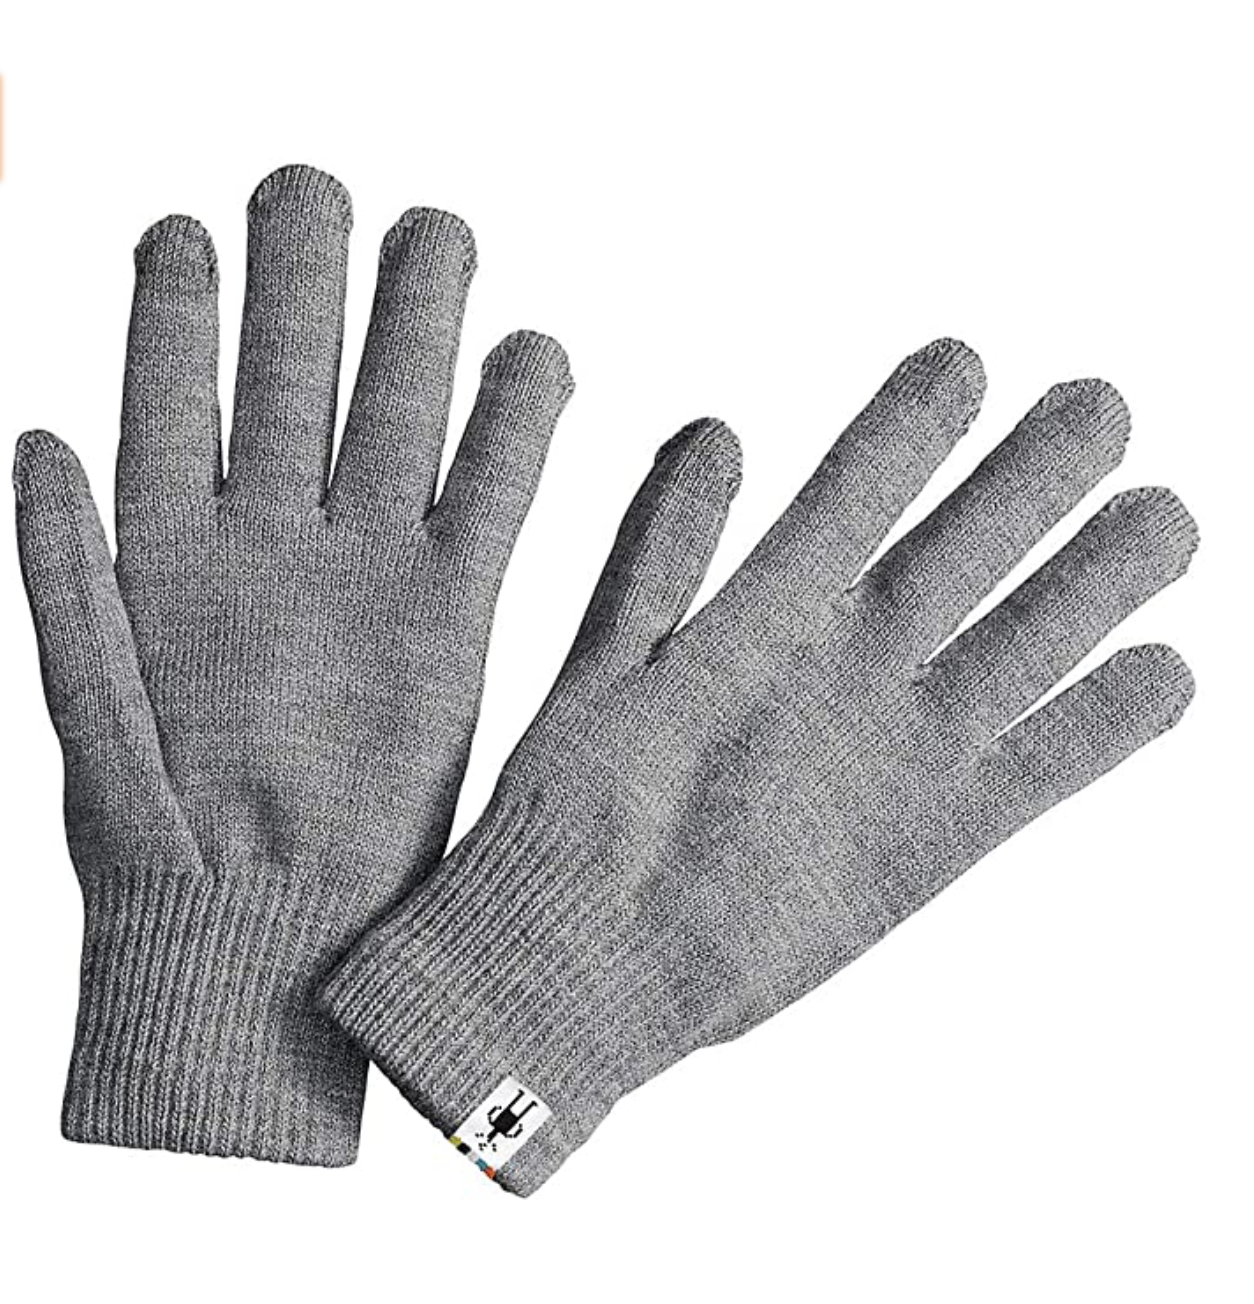 Smartwool gloves